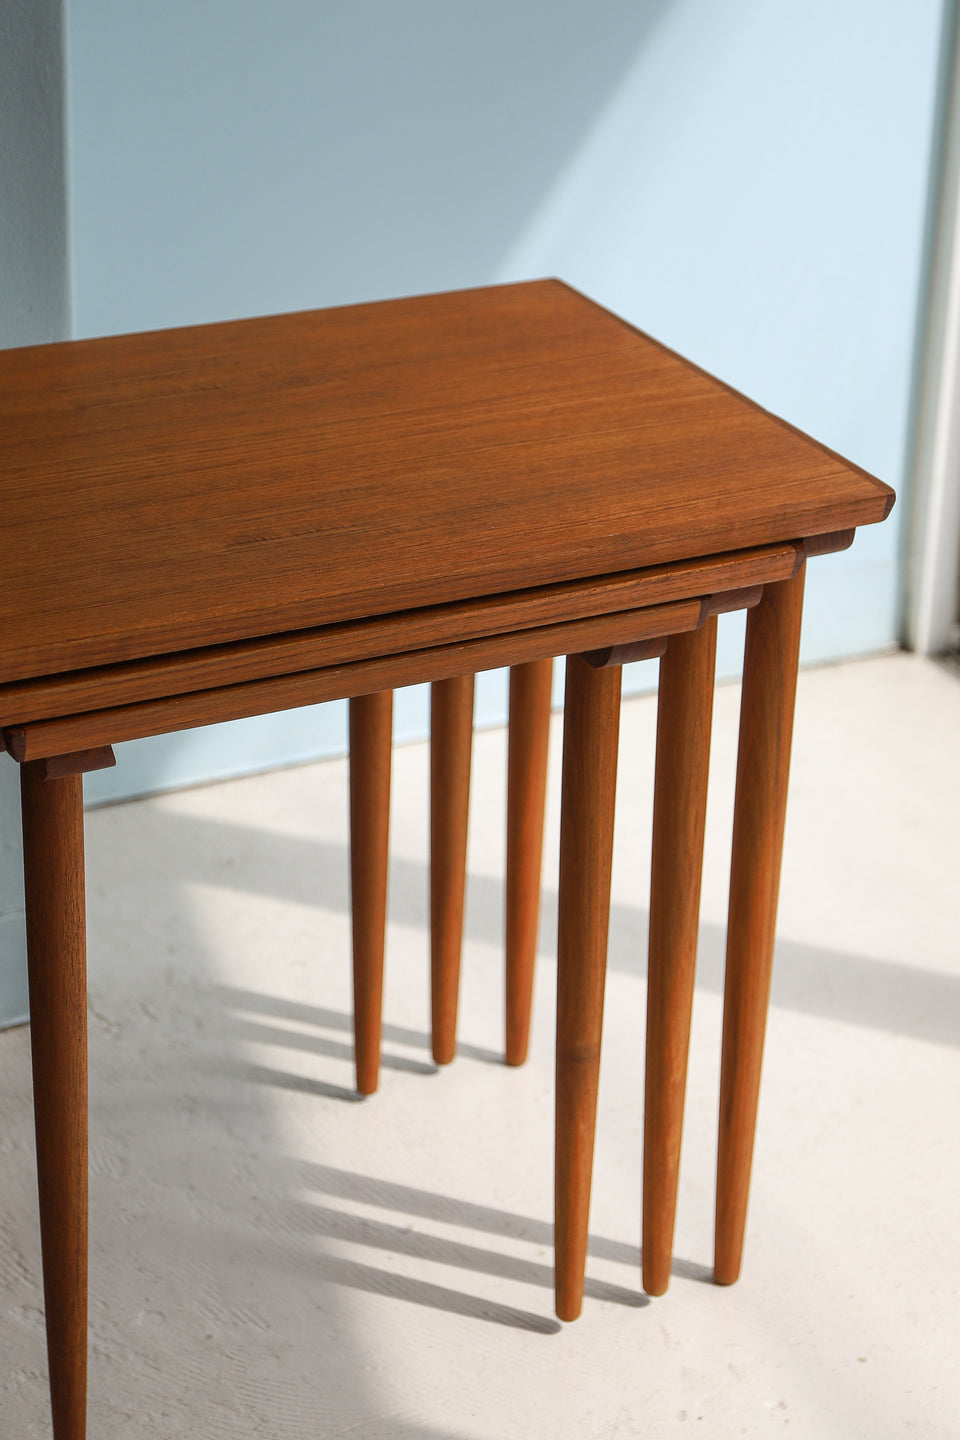 Teakwood Nesting Table Danish Vintage/デンマークヴィンテージ ネストテーブル サイドテーブル チーク材 北欧家具